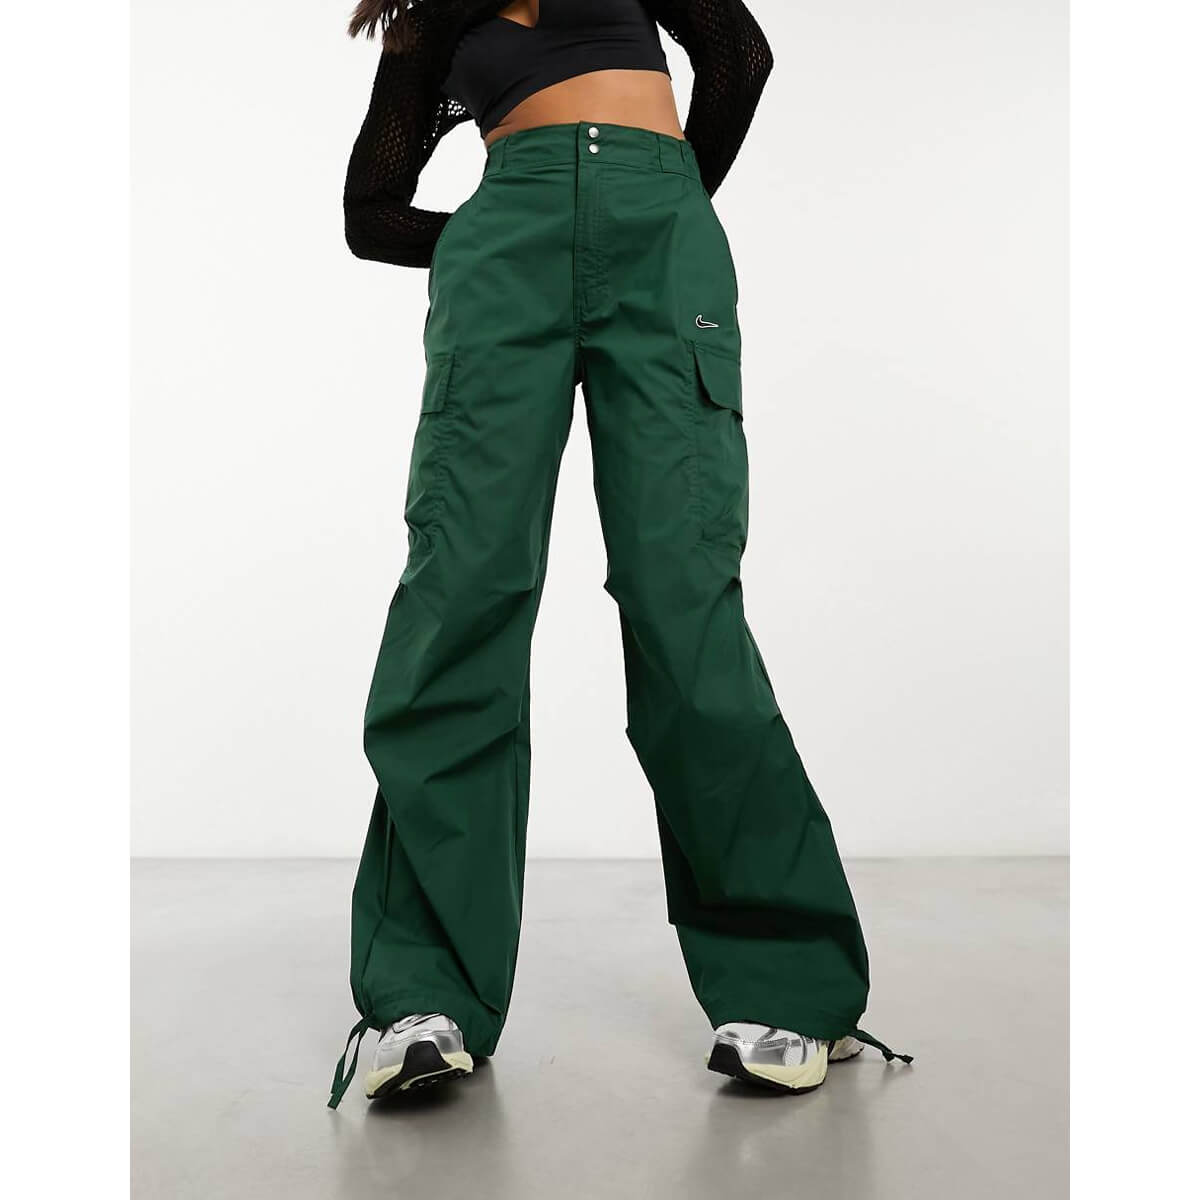 Брюки Nike Streetwear Woven Oversized Cargo, темно-зеленый зеленые нейлоновые брюки карго guess originals